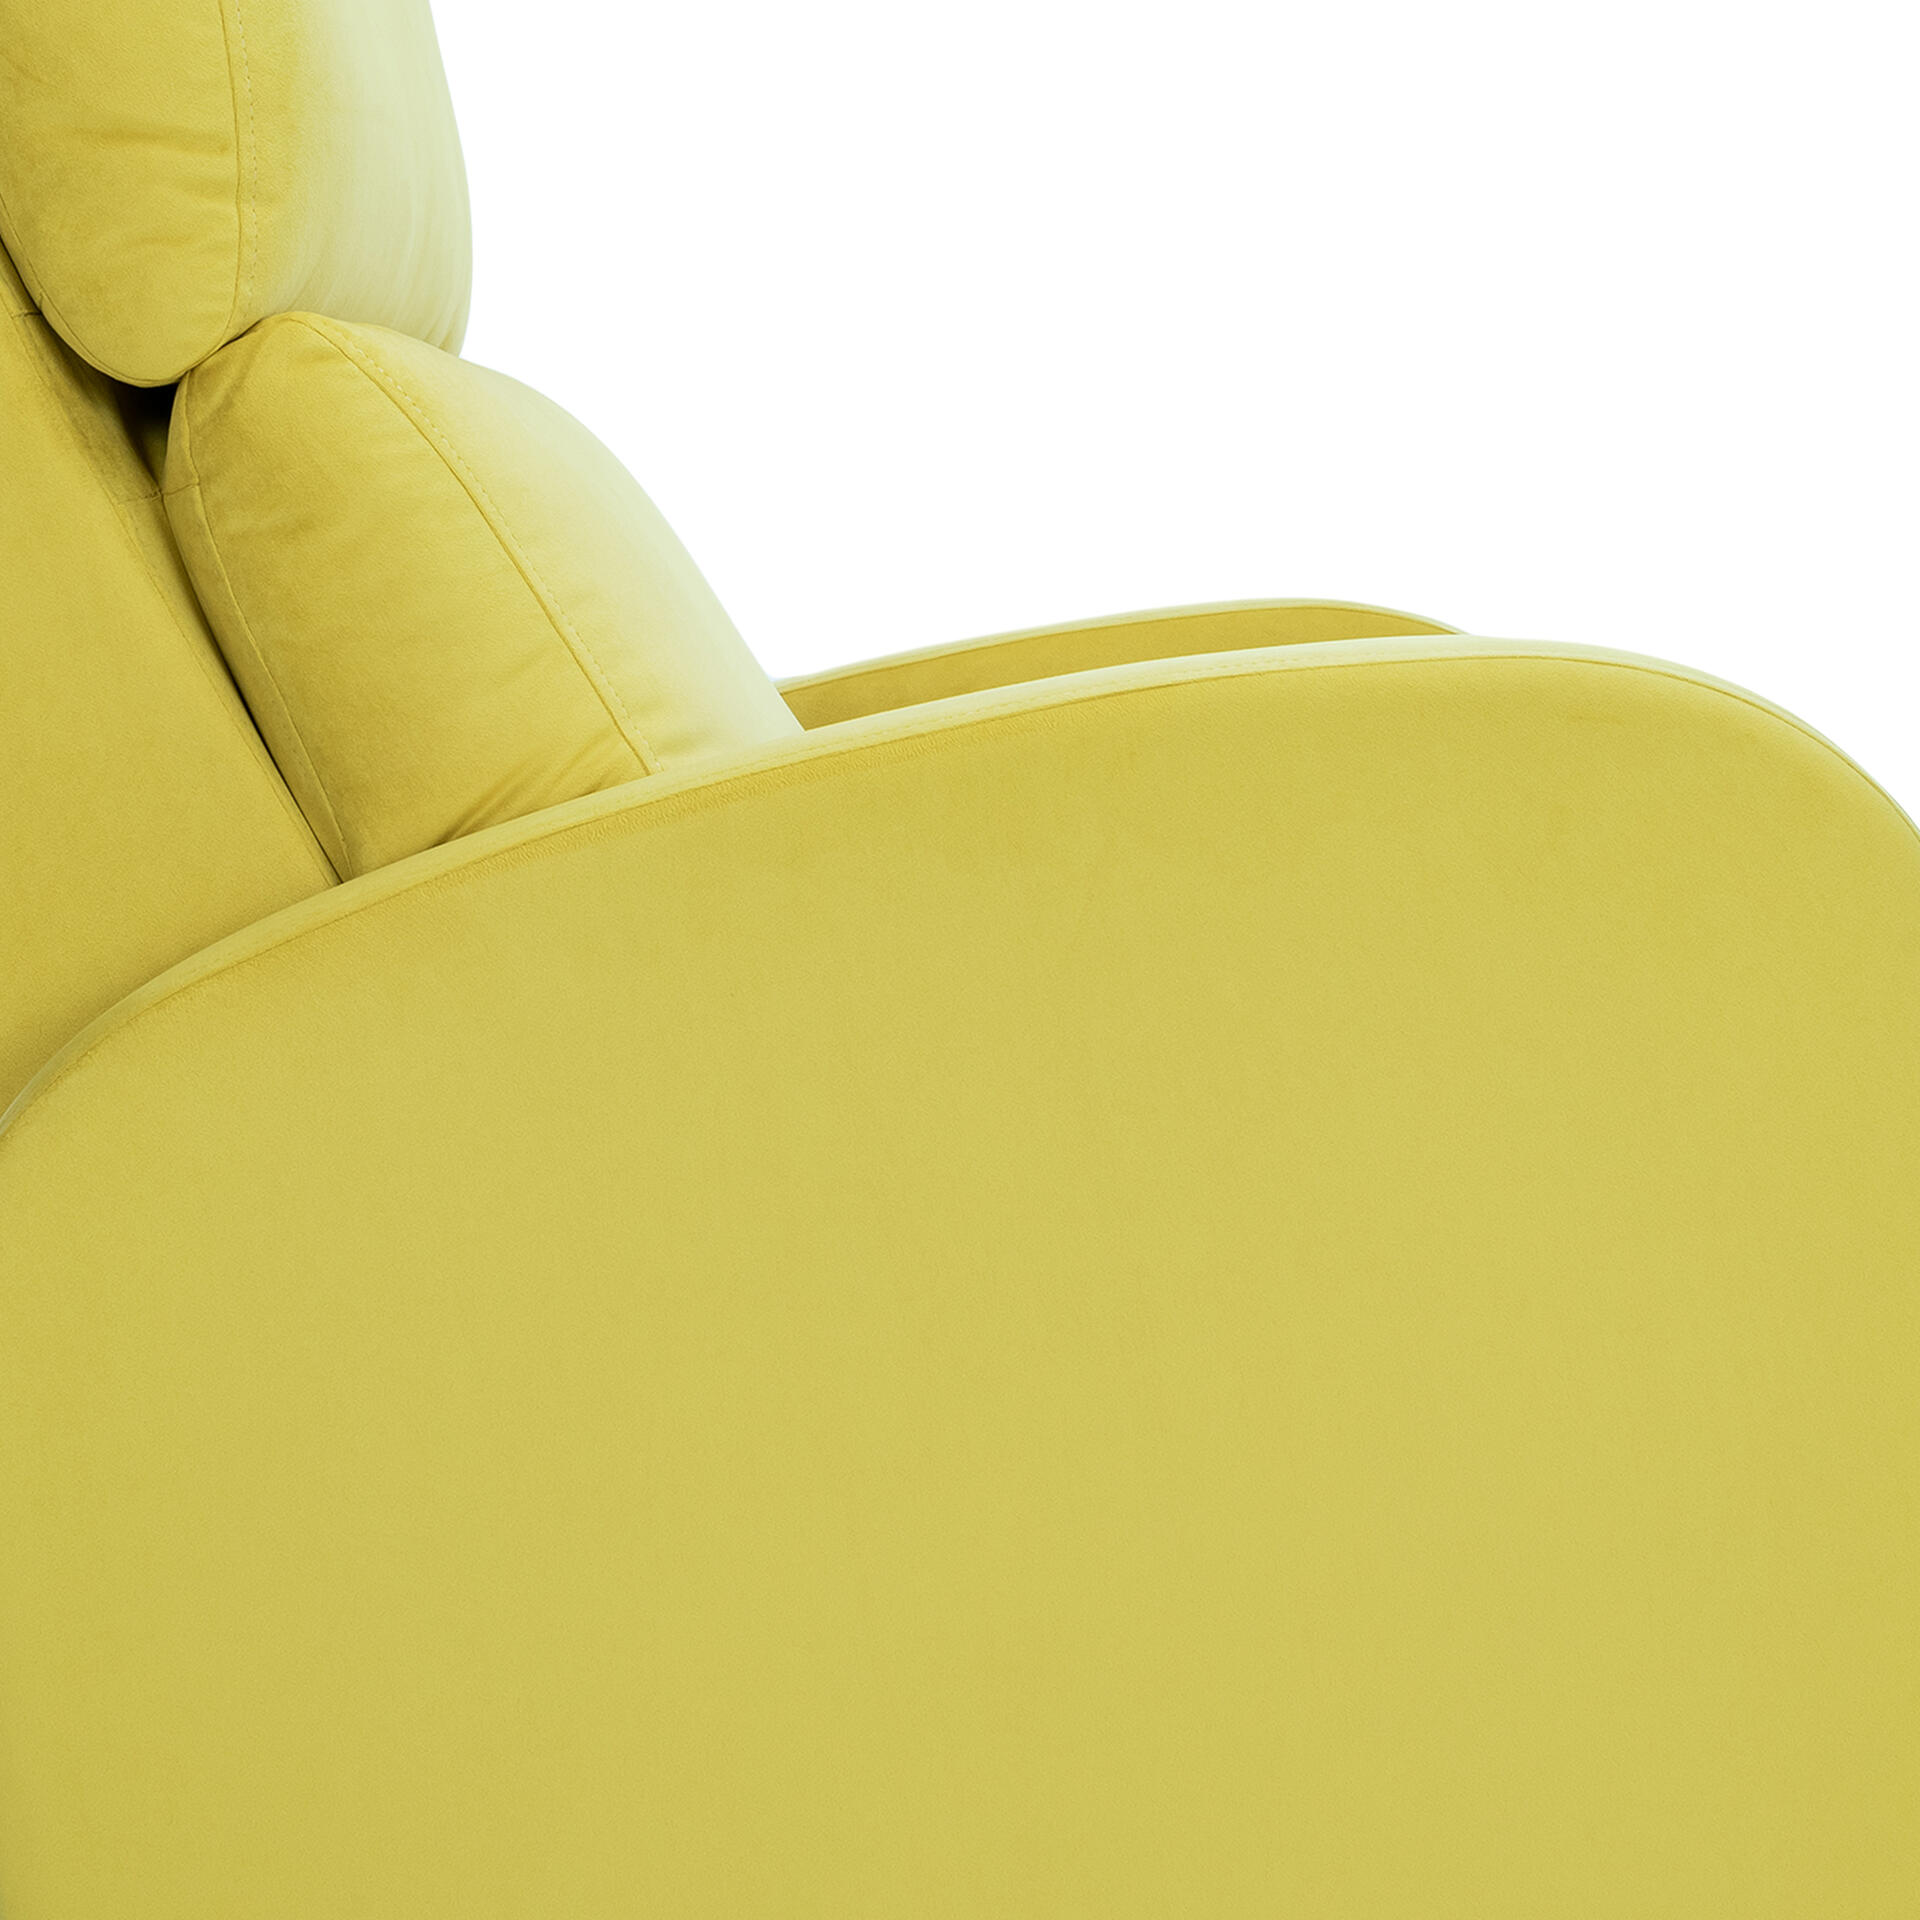 Кресло реклайнер желтого цвета купить в Москве